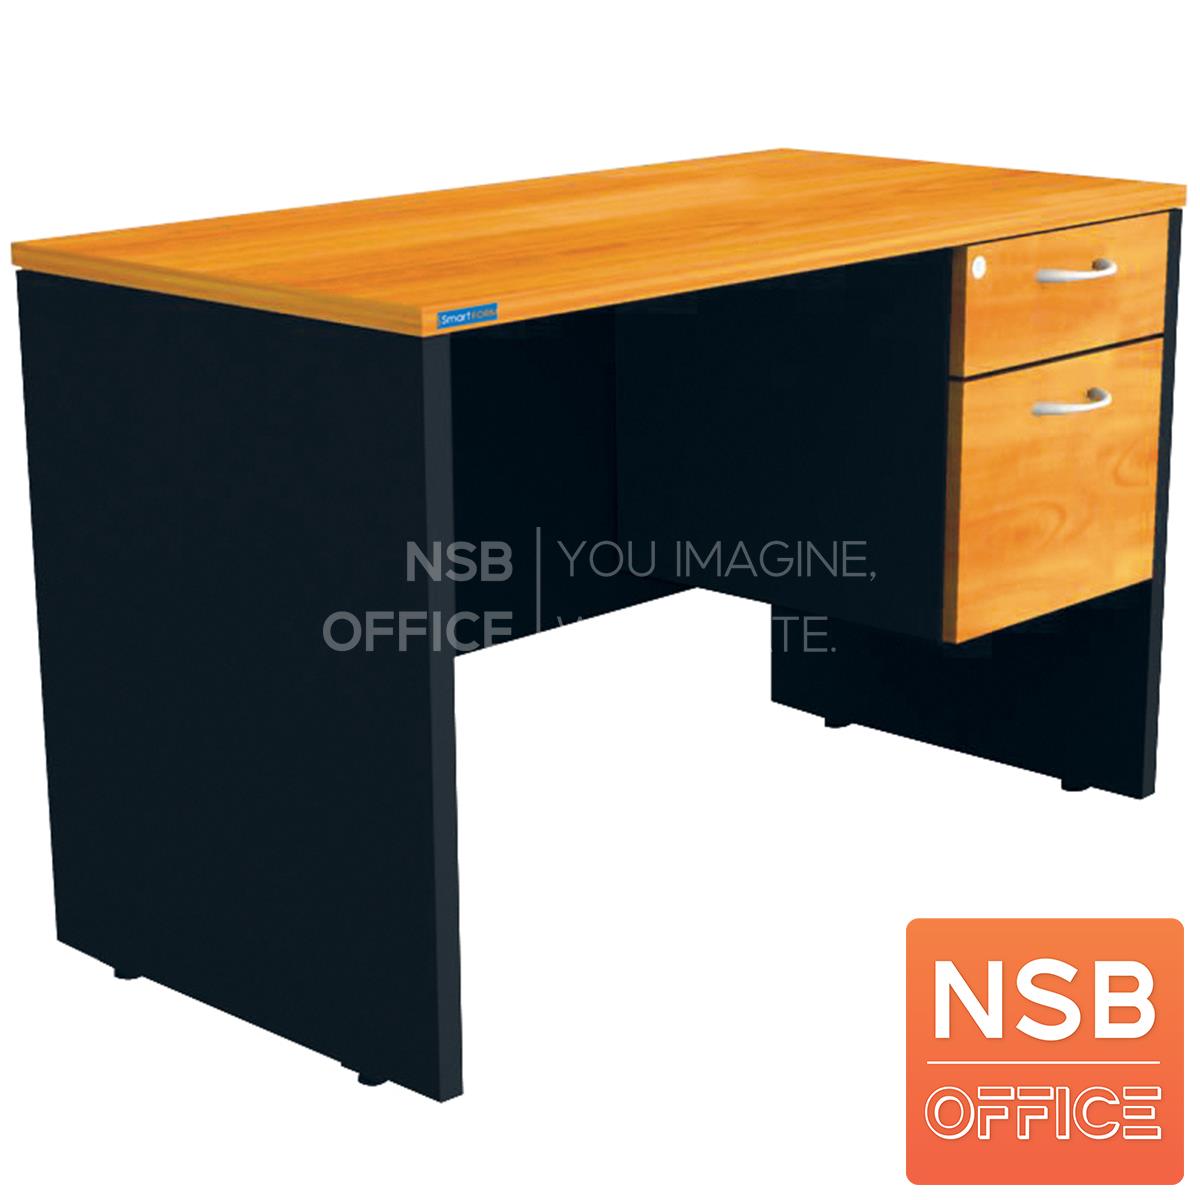 A12A089:โต๊ะทำงาน 2 ลิ้นชัก รุ่น Nilsson (นิลส์ซัน) ขนาด 120W*60D*75H cm. เมลามีน สีเชอร์รี่ดำ